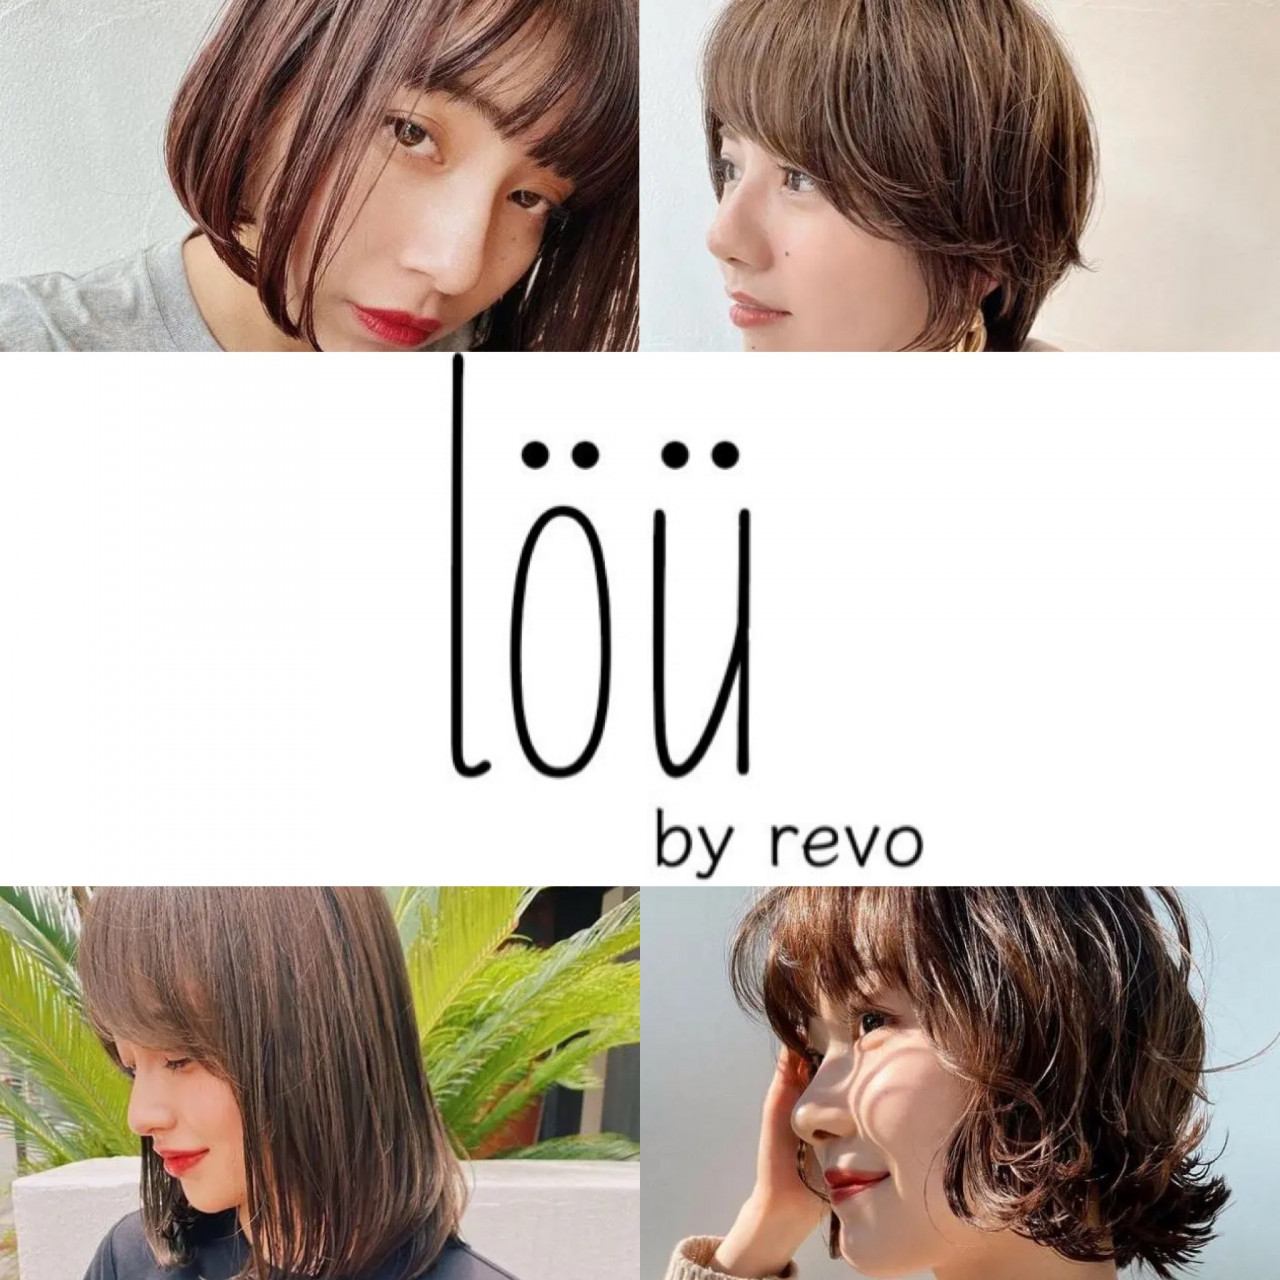 lou by revo 柏【ロウバイレボ 柏】